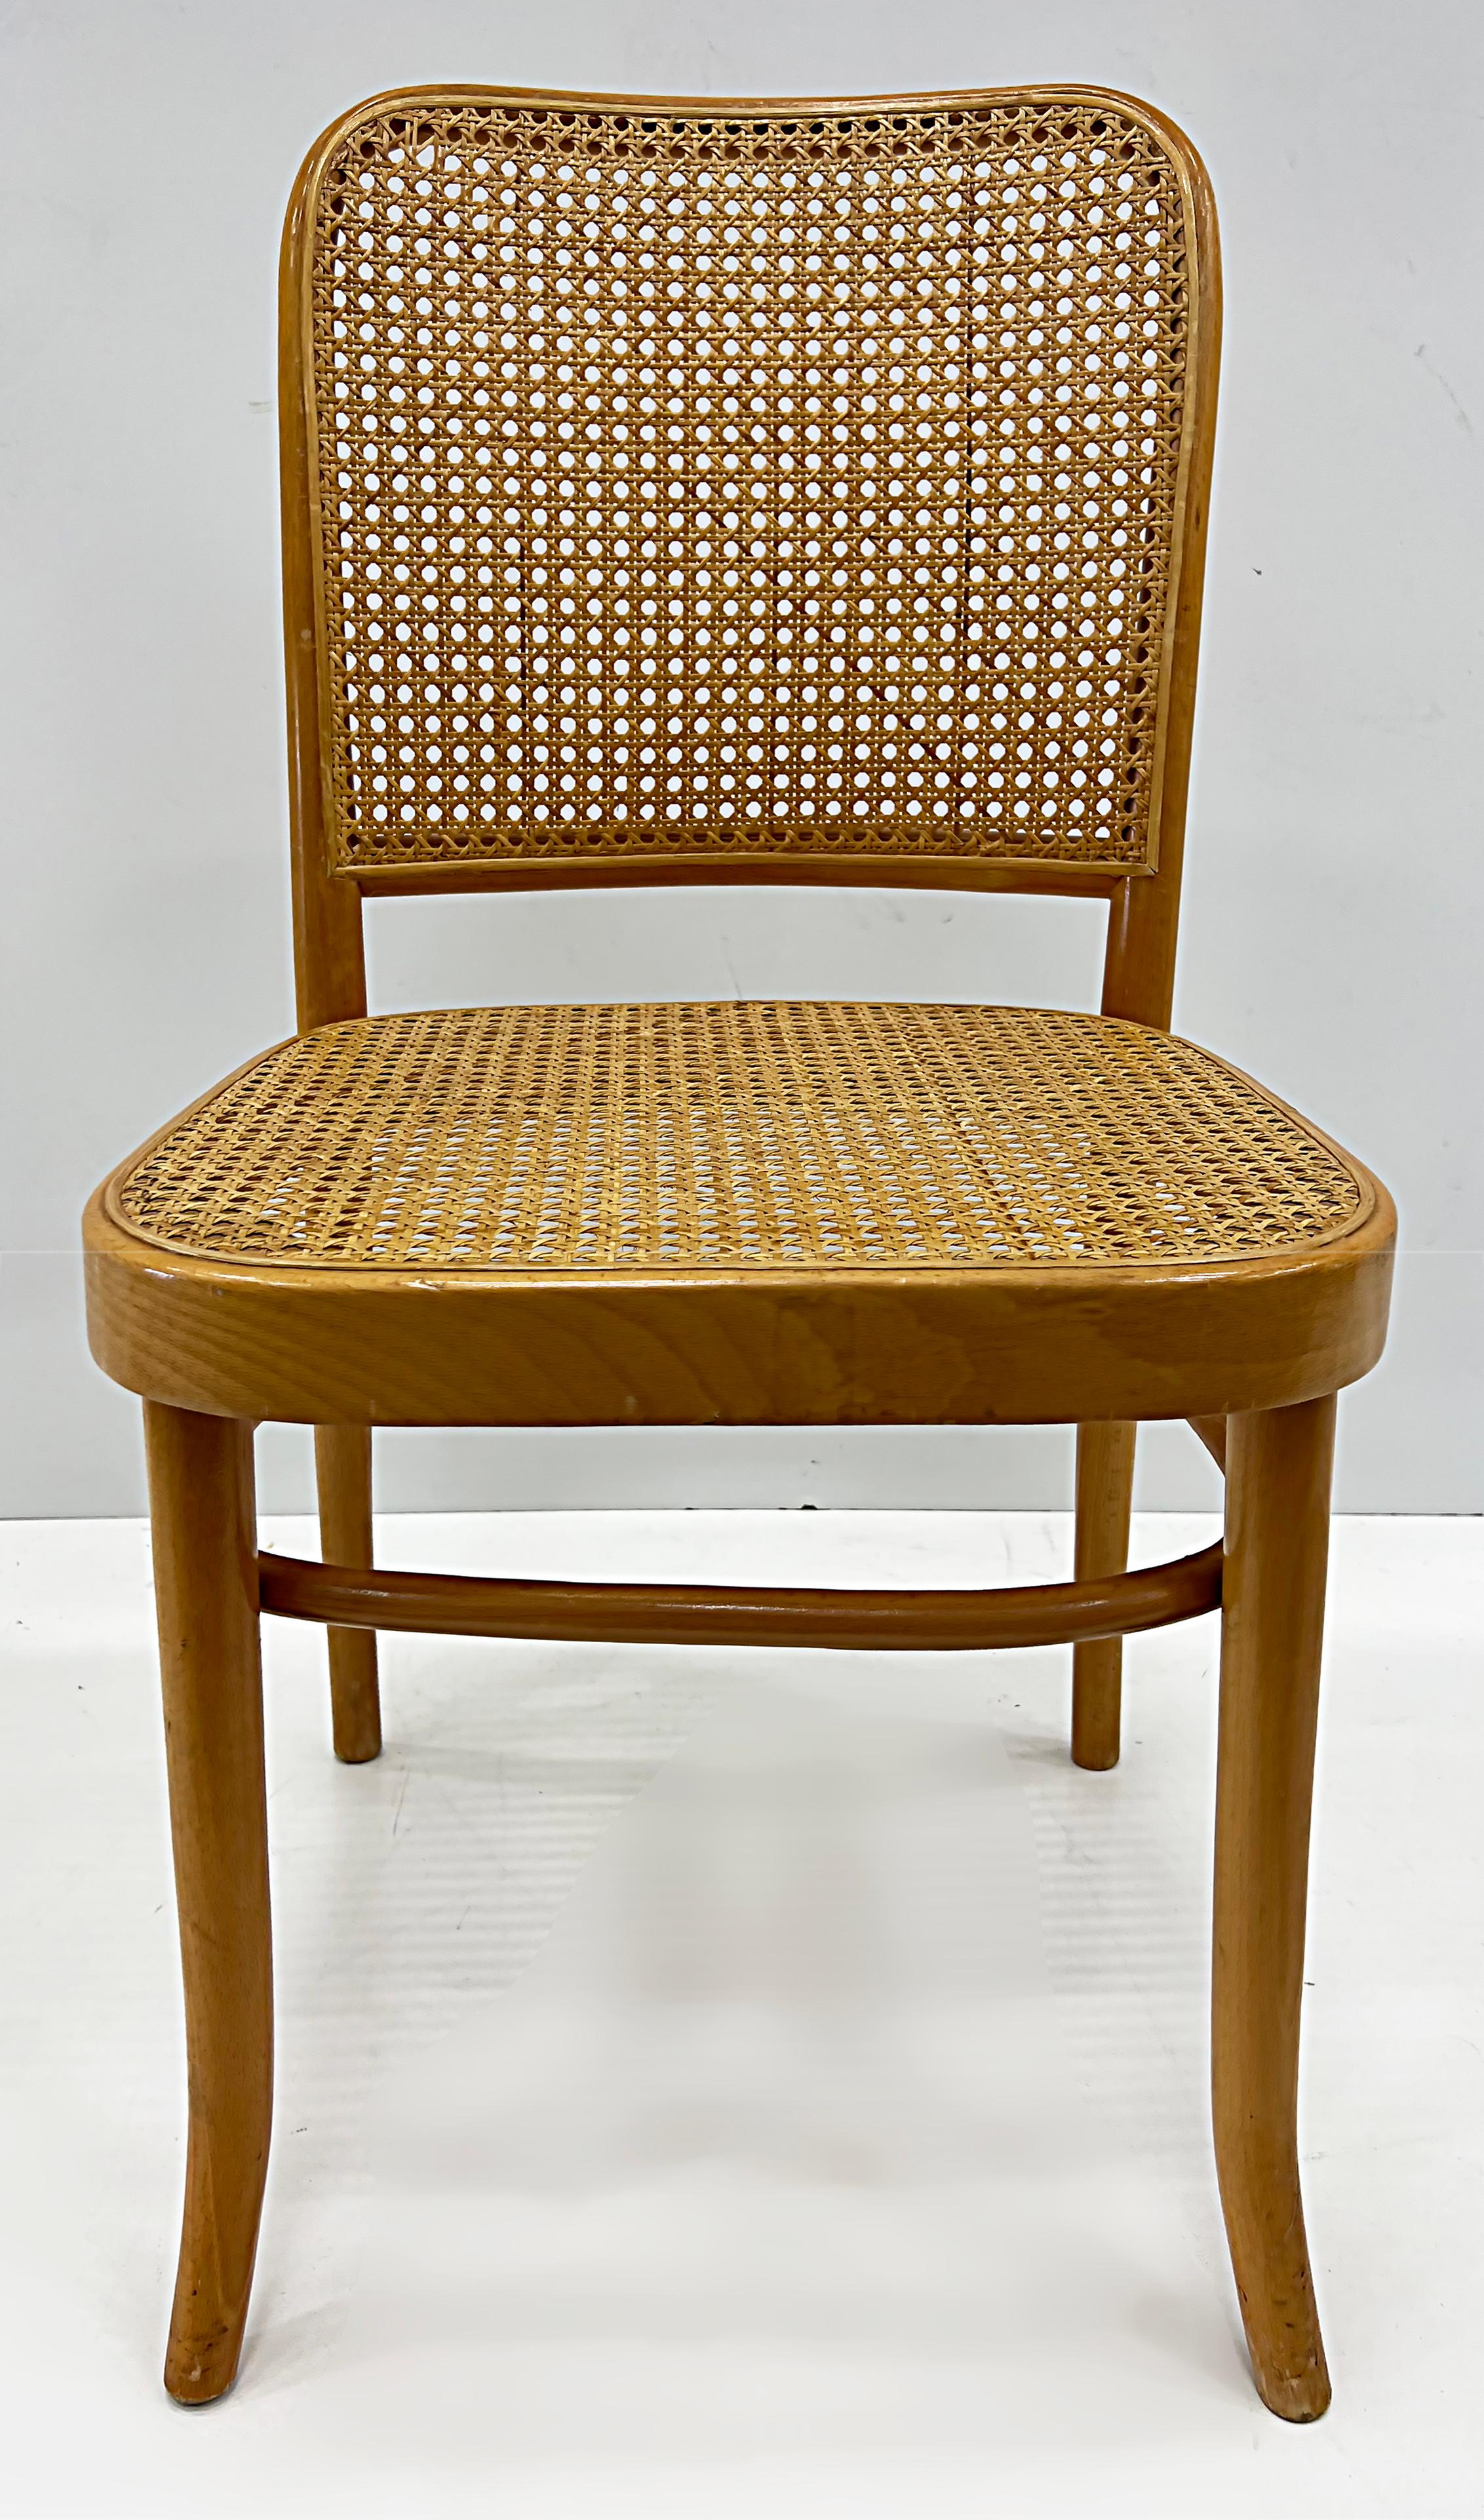 Salvatore Leone Chaises cannées en bois courbé, style thonet.

Nous proposons à la vente une paire de chaises vintage en bois courbé de style Thonet avec sièges et dossiers cannelés par Salvatore Leone. Ils proviennent de Modène, en Italie, où